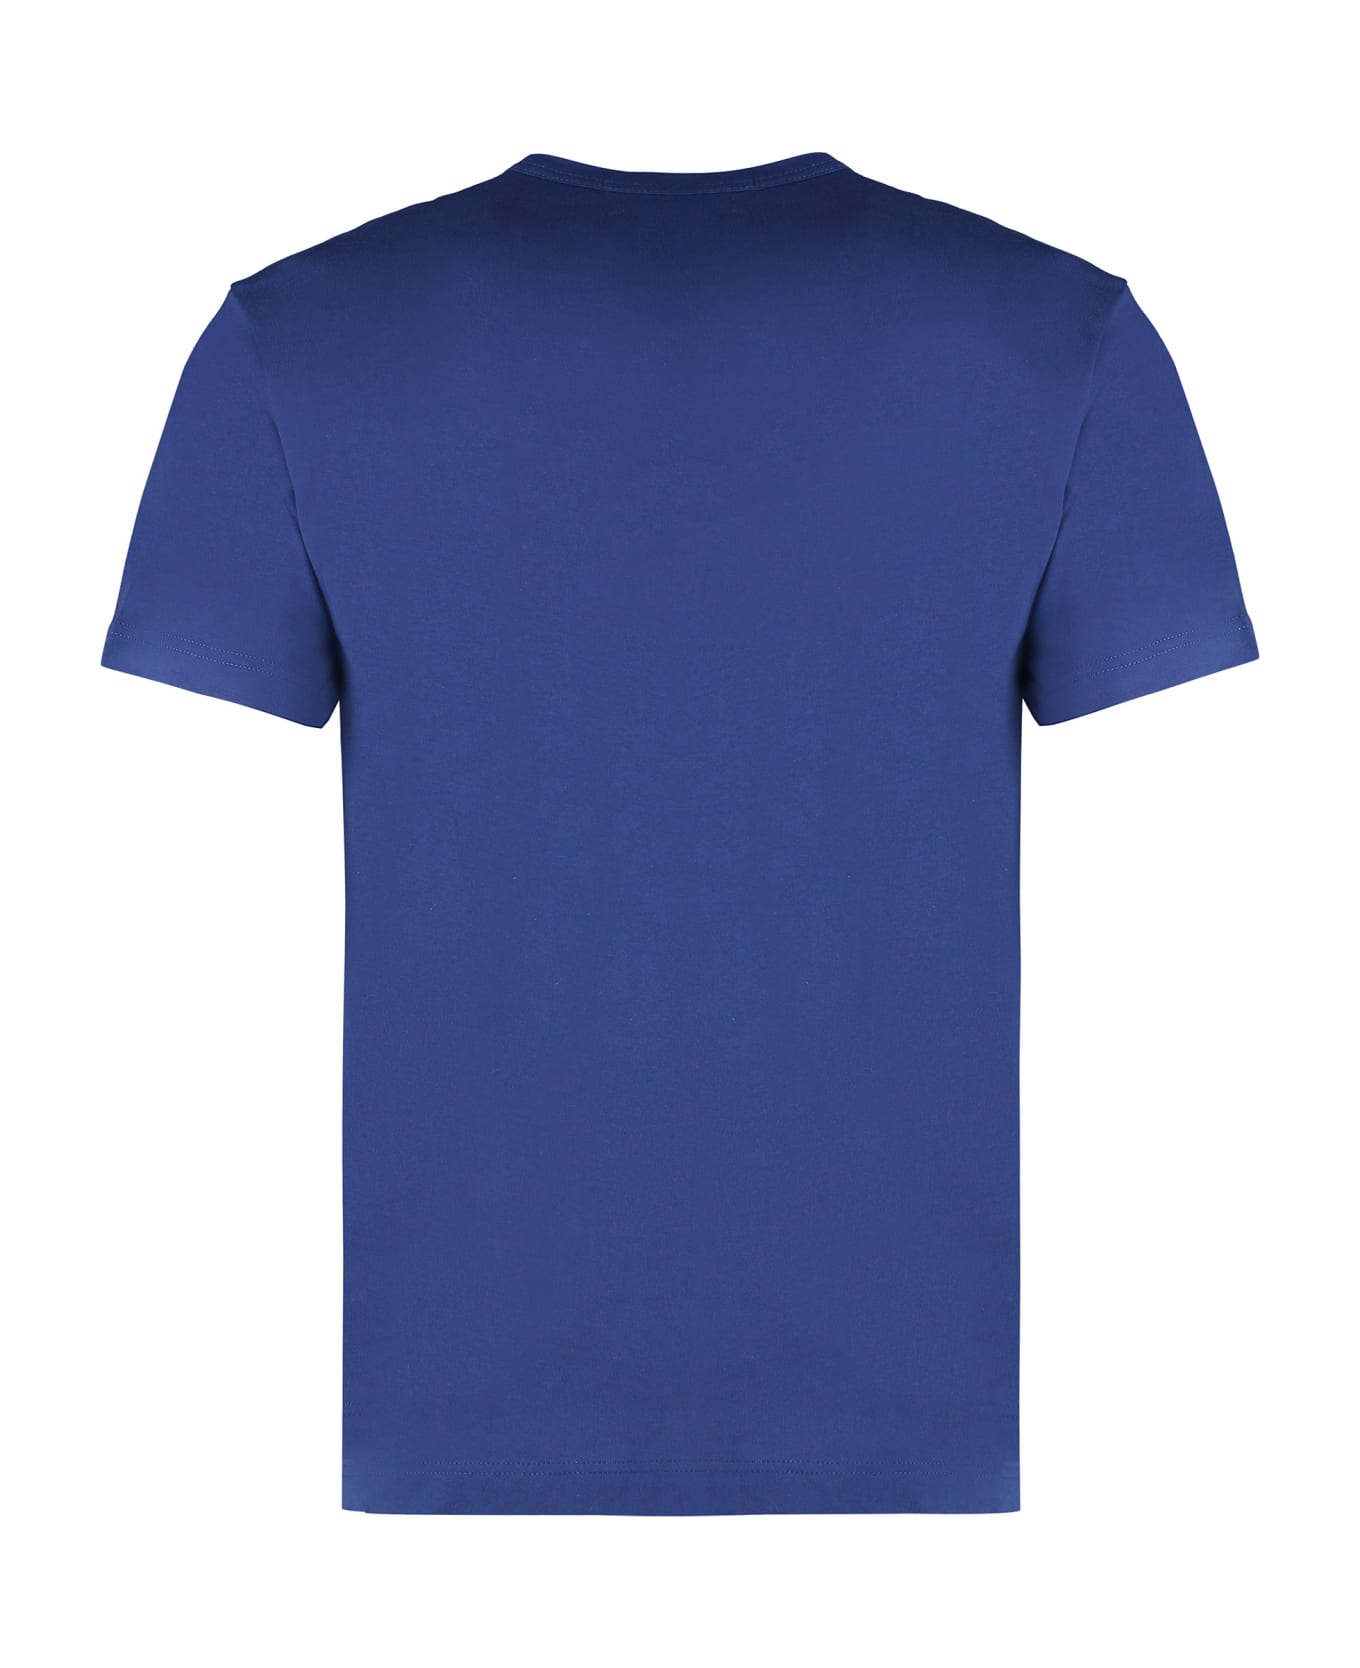 Comme des Garçons Shirt Cotton Crew-neck T-shirt - blue シャツ